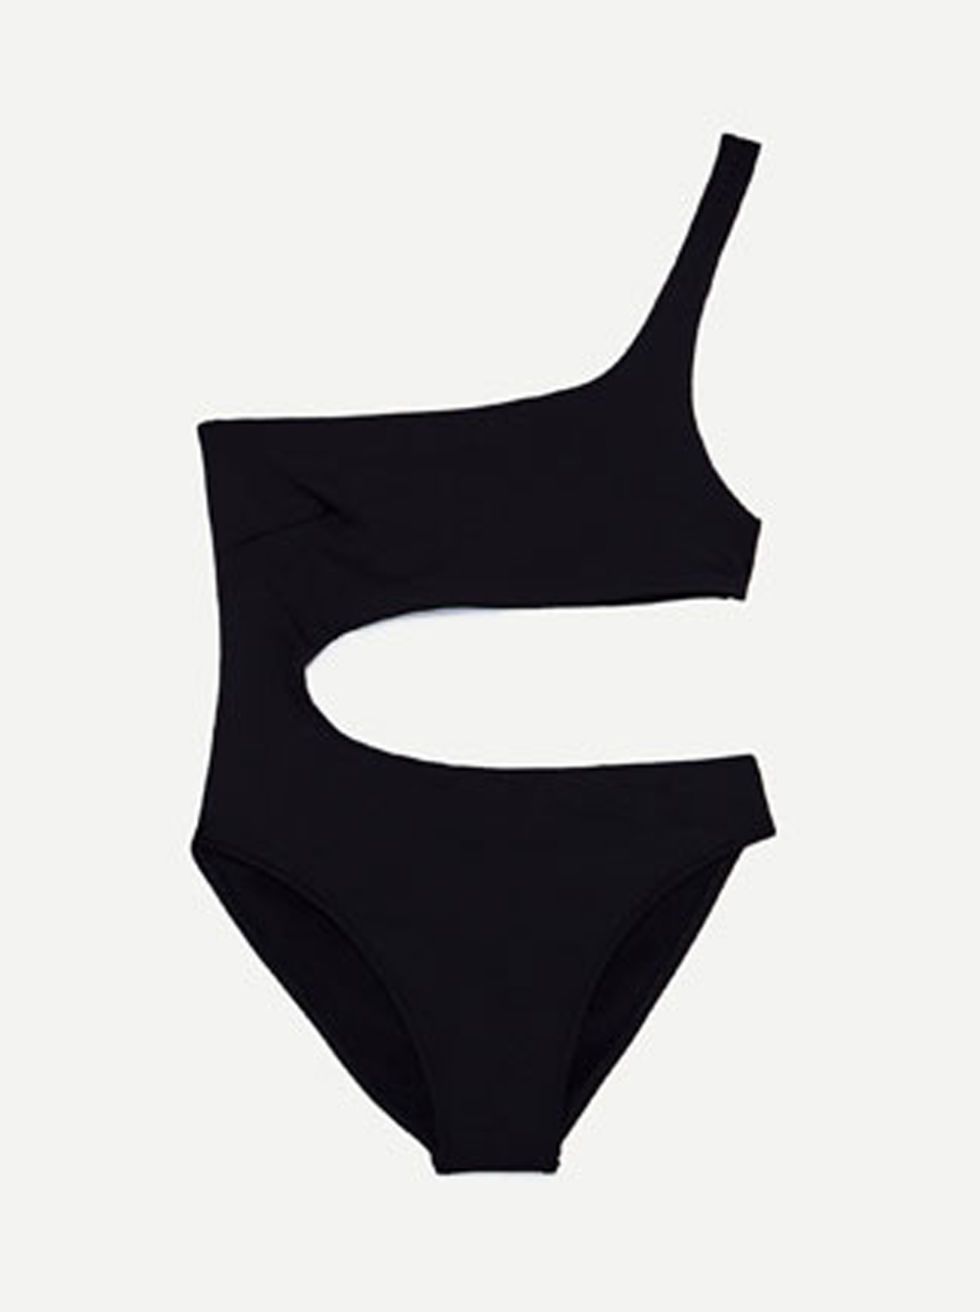 <p>Zara, € 25,95 - verkrijgbaar via <a href="https://www.zara.com/nl/nl/dames/swimwear-collection/asymmetrisch-badpak-c398505p4475558.html" target="_blank" data-tracking-id="recirc-text-link">zara.com</a></p>